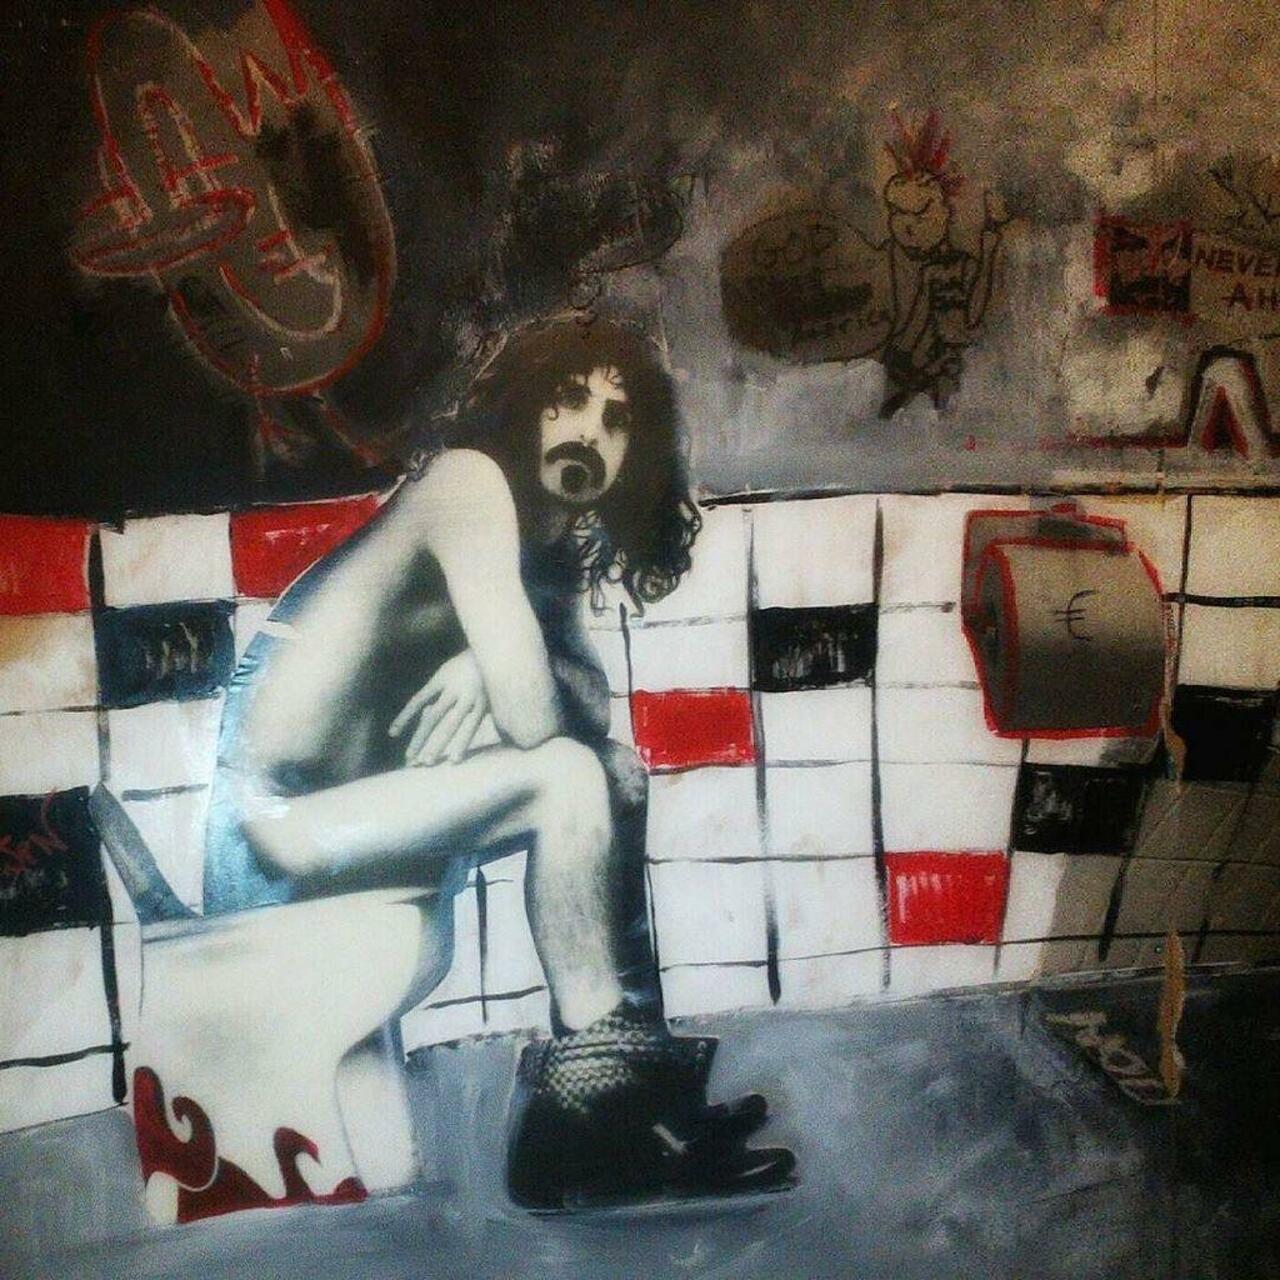 Relax and n'joy a Great Zappa graffiti at Blackbird bar, Athens
#graffiti #streetart #urba… http://ift.tt/1LnGl2c http://t.co/XLLWJb0G40